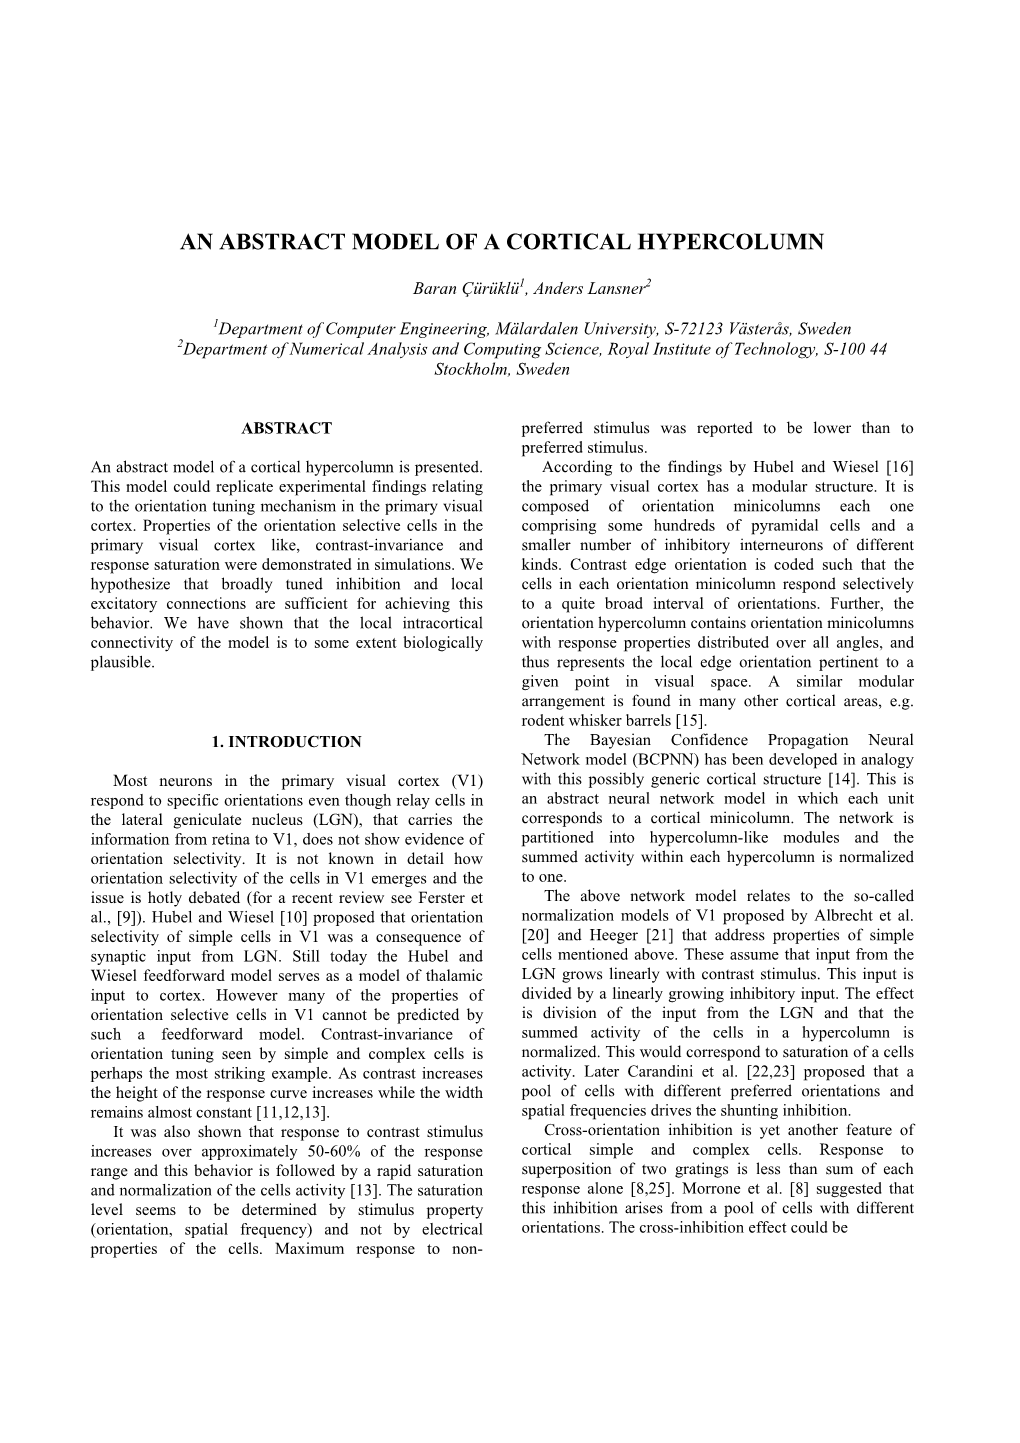 An Abstract Model of a Cortical Hypercolumn